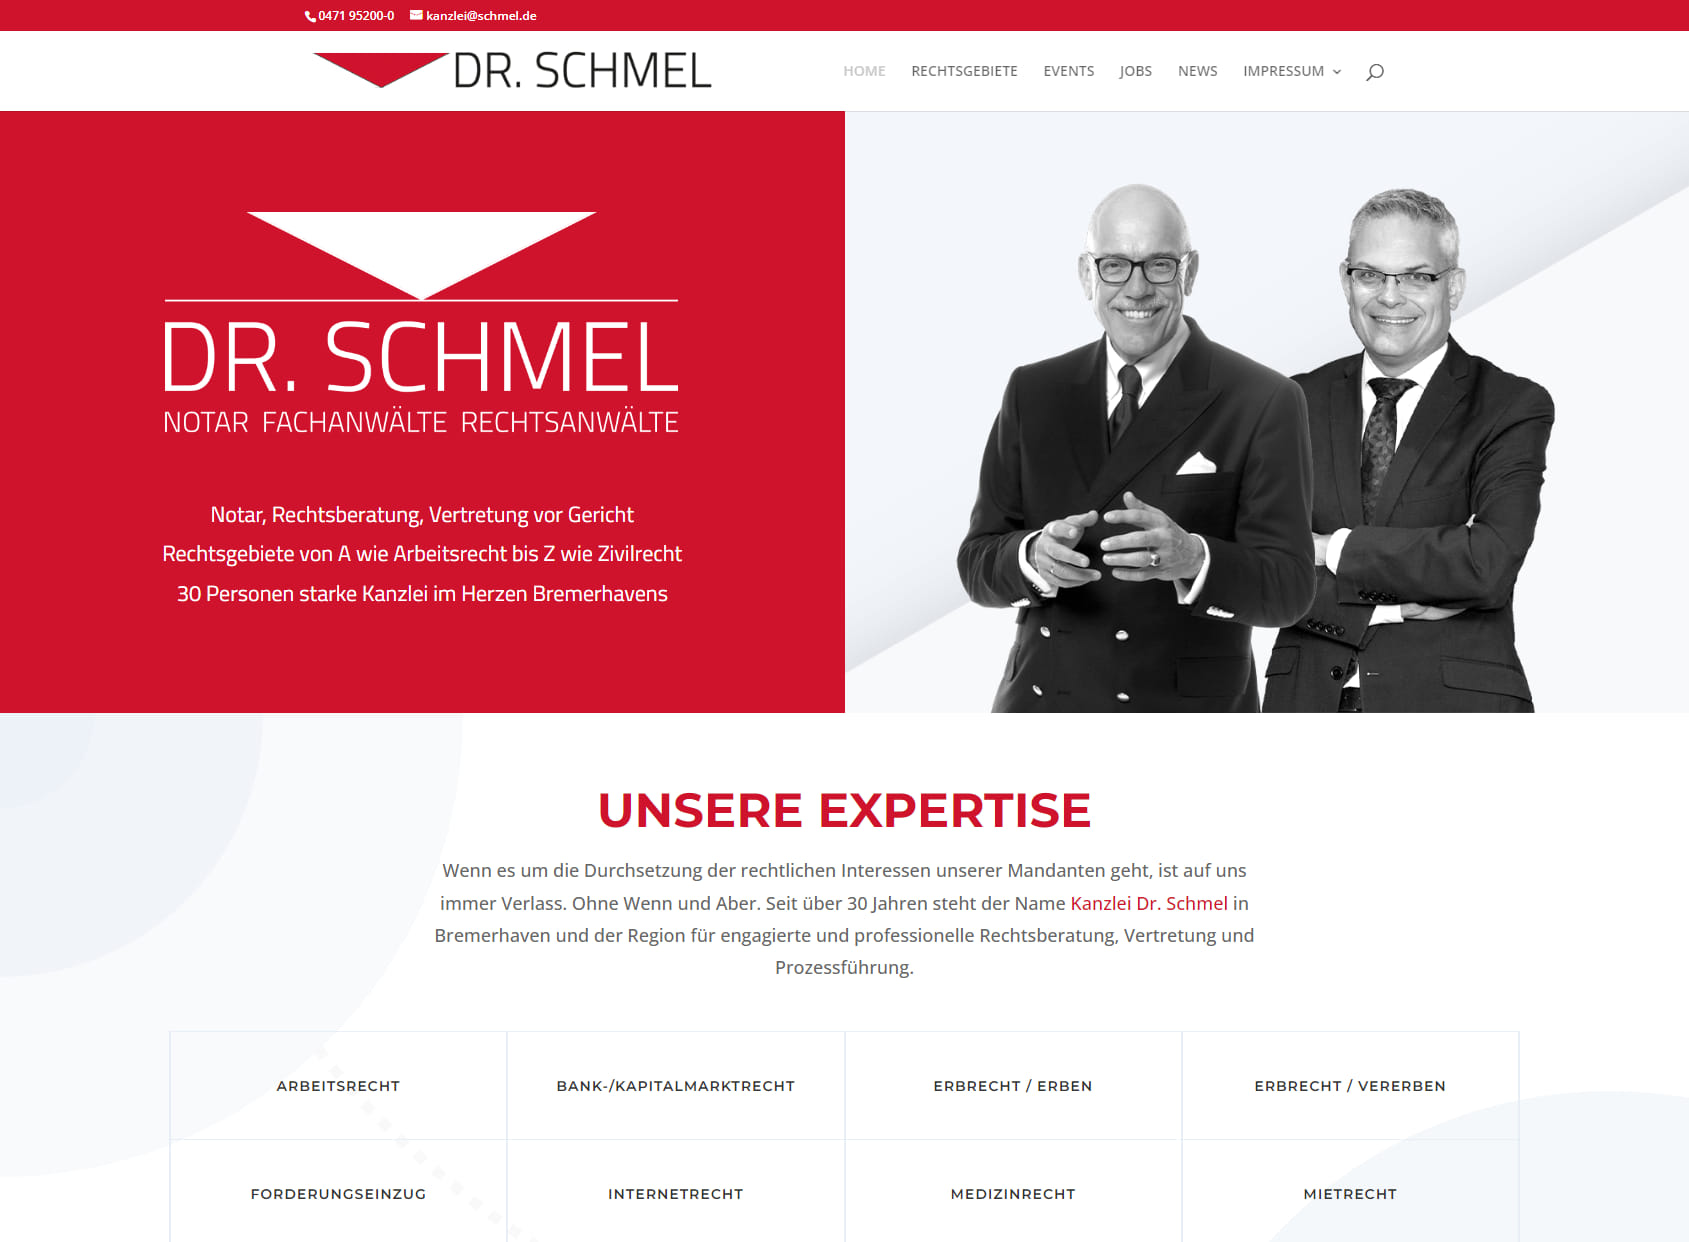 DR. SCHMEL - Notar Fachanwälte Rechtsanwälte